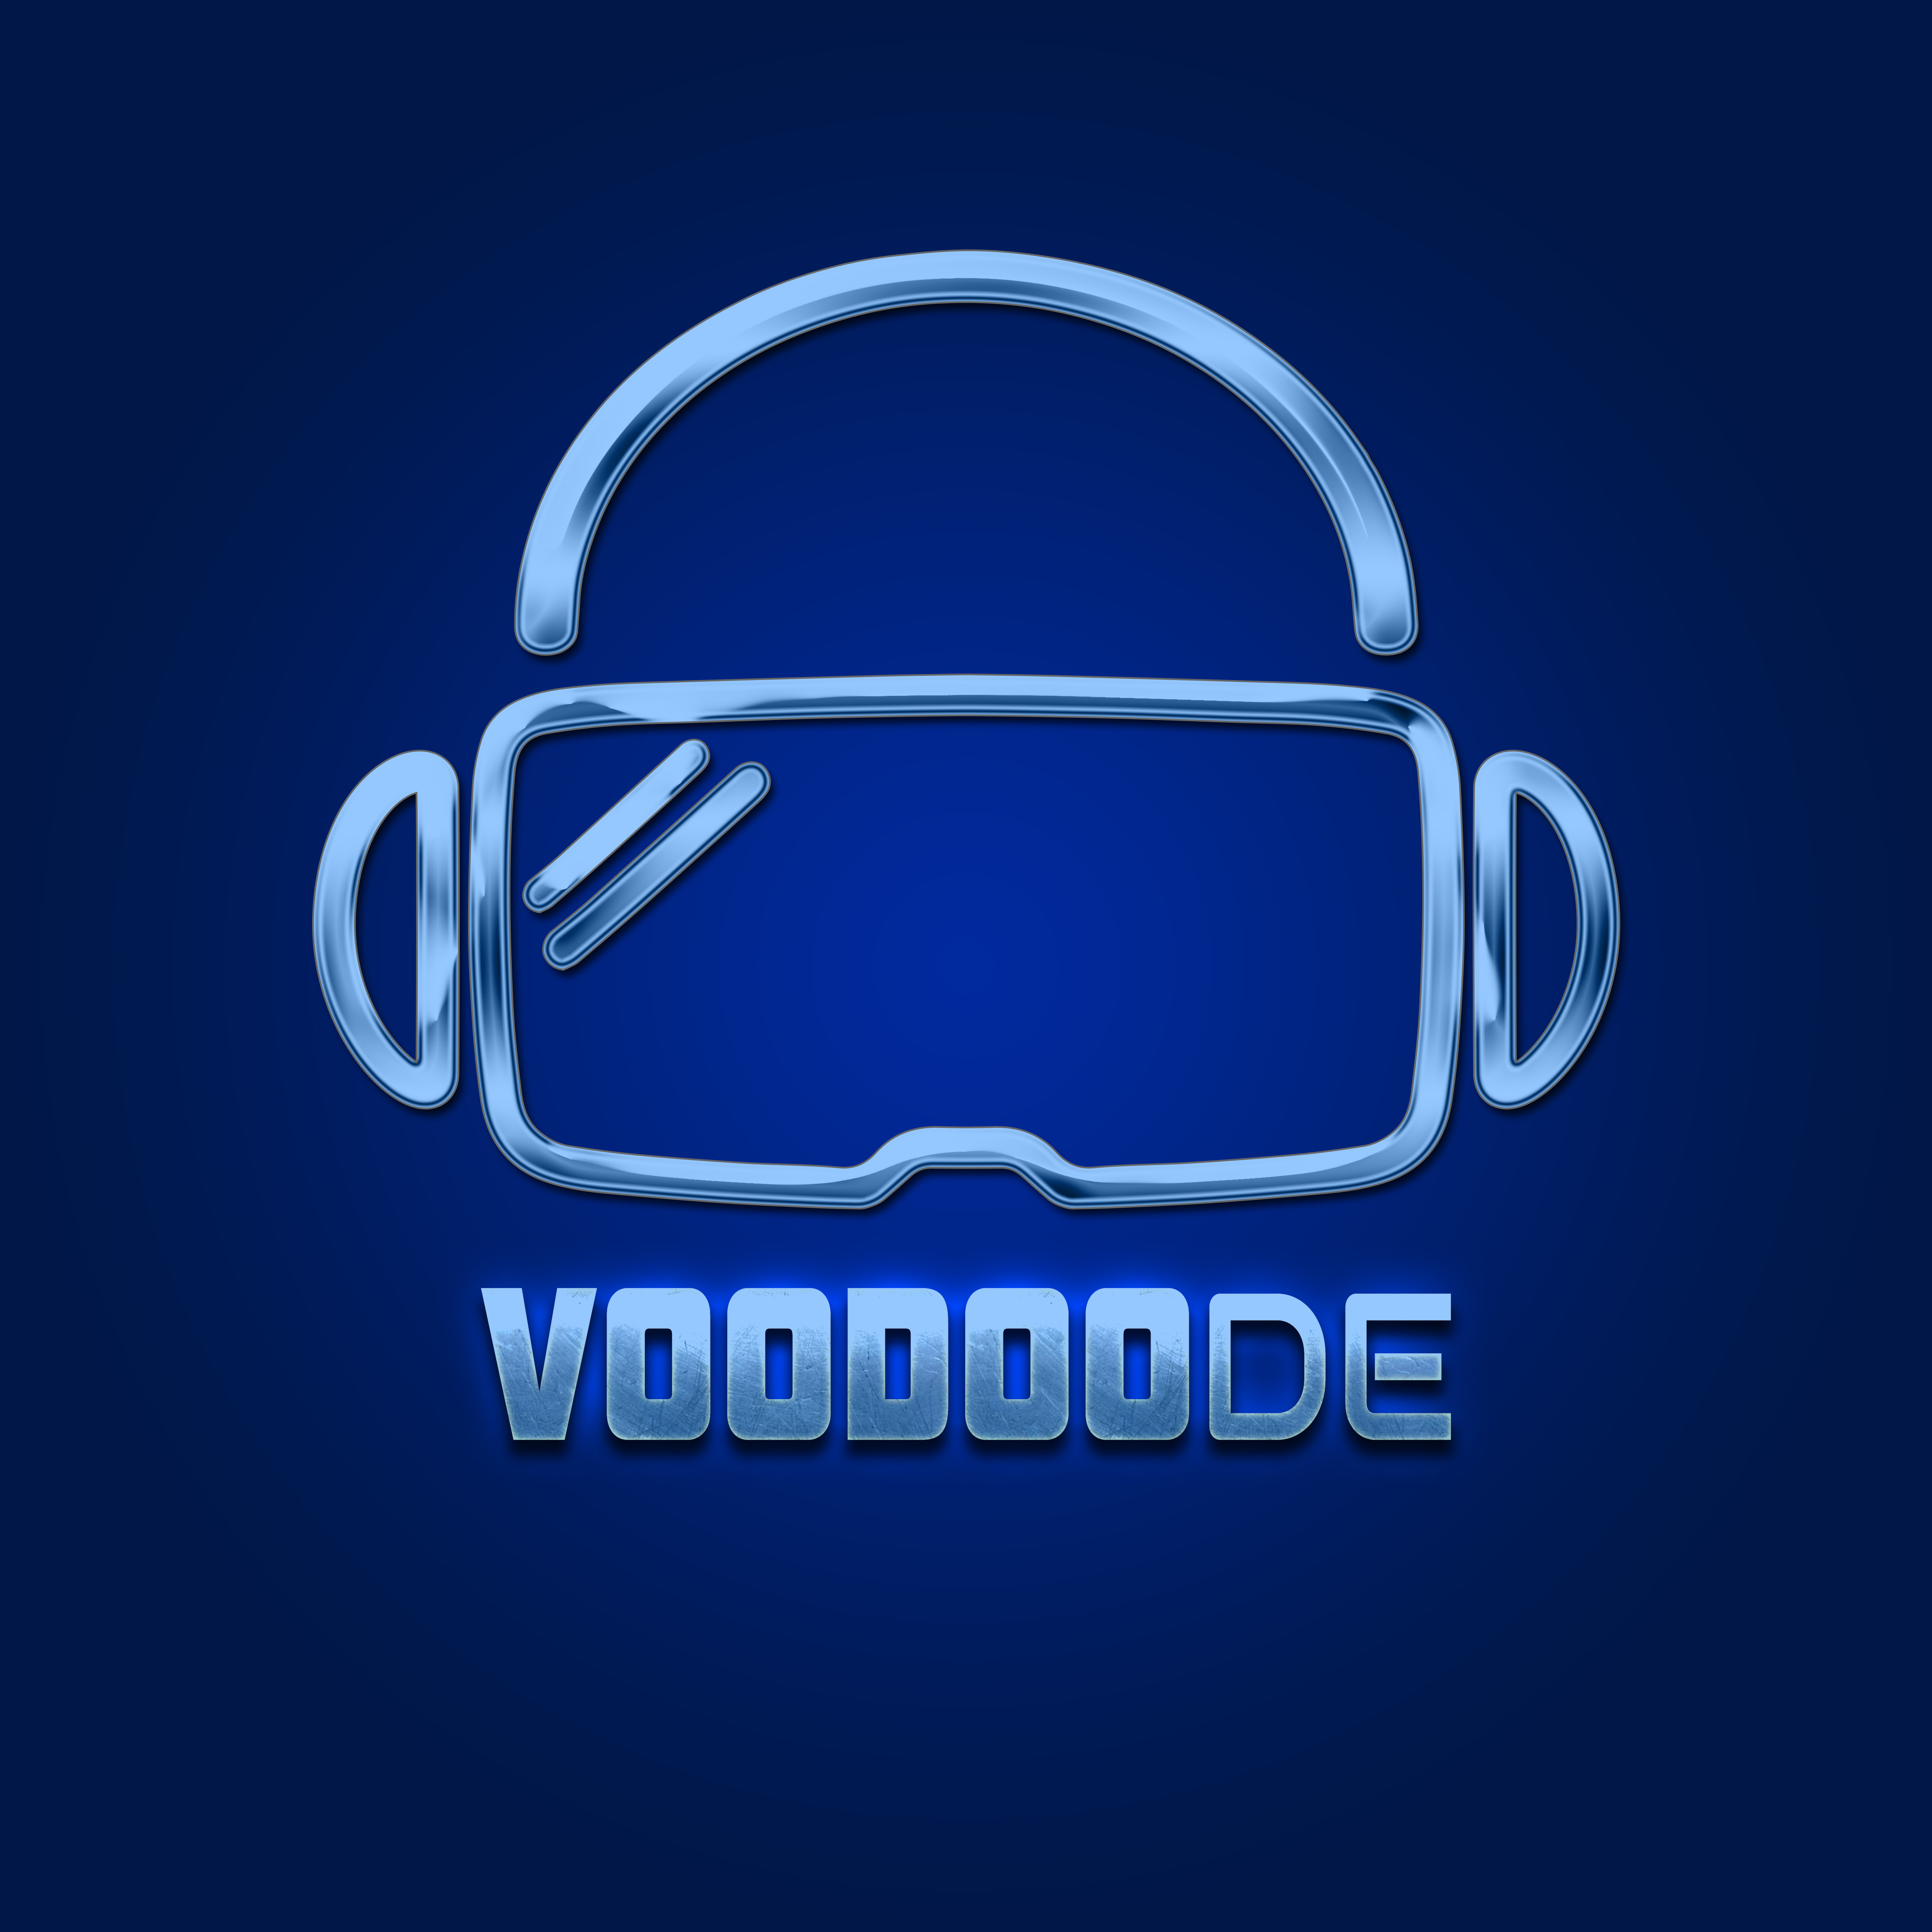 VoodooDE